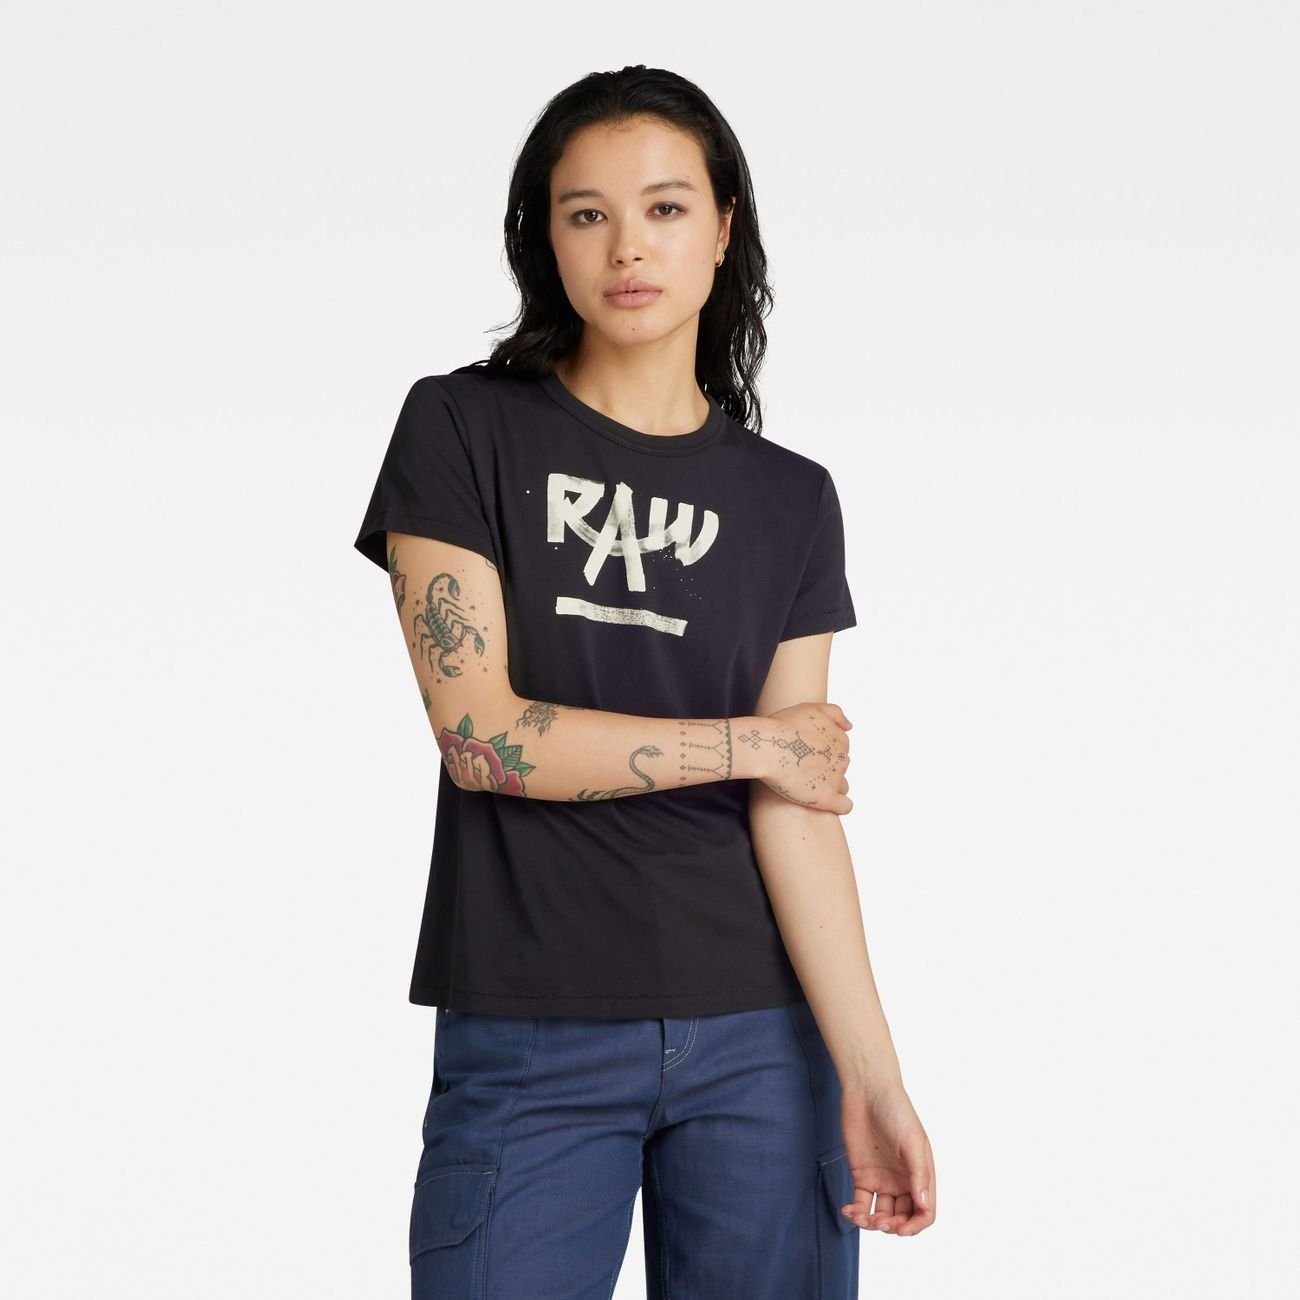 OTTO kaufen | G-Star T-Shirts Damen RAW online